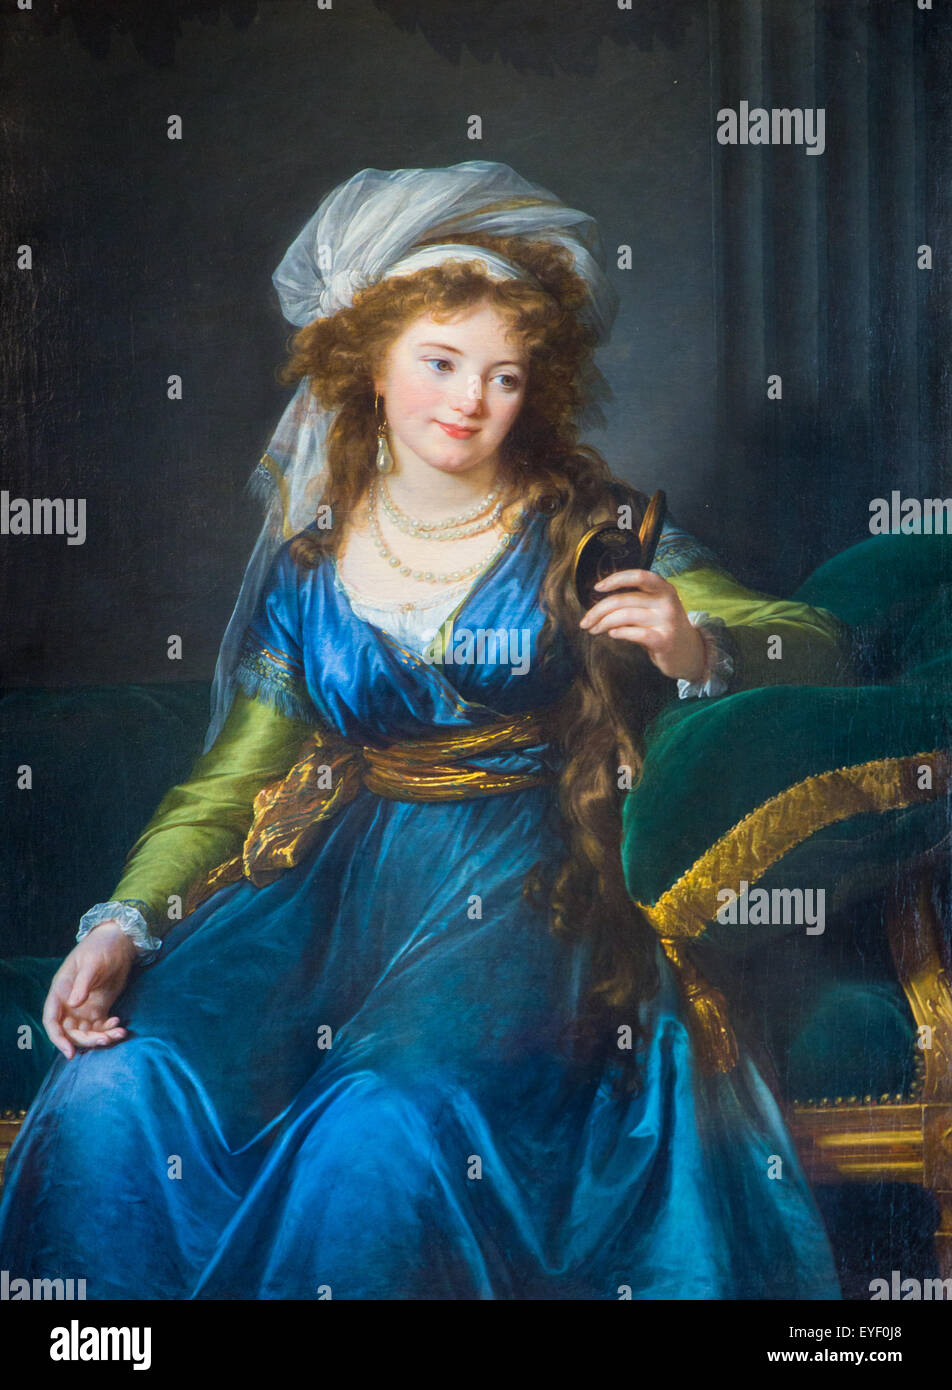 Porträt der Gräfin Catherine Skavronskaia 01.08.2014 - Sammlung des 18. Jahrhunderts Stockfoto